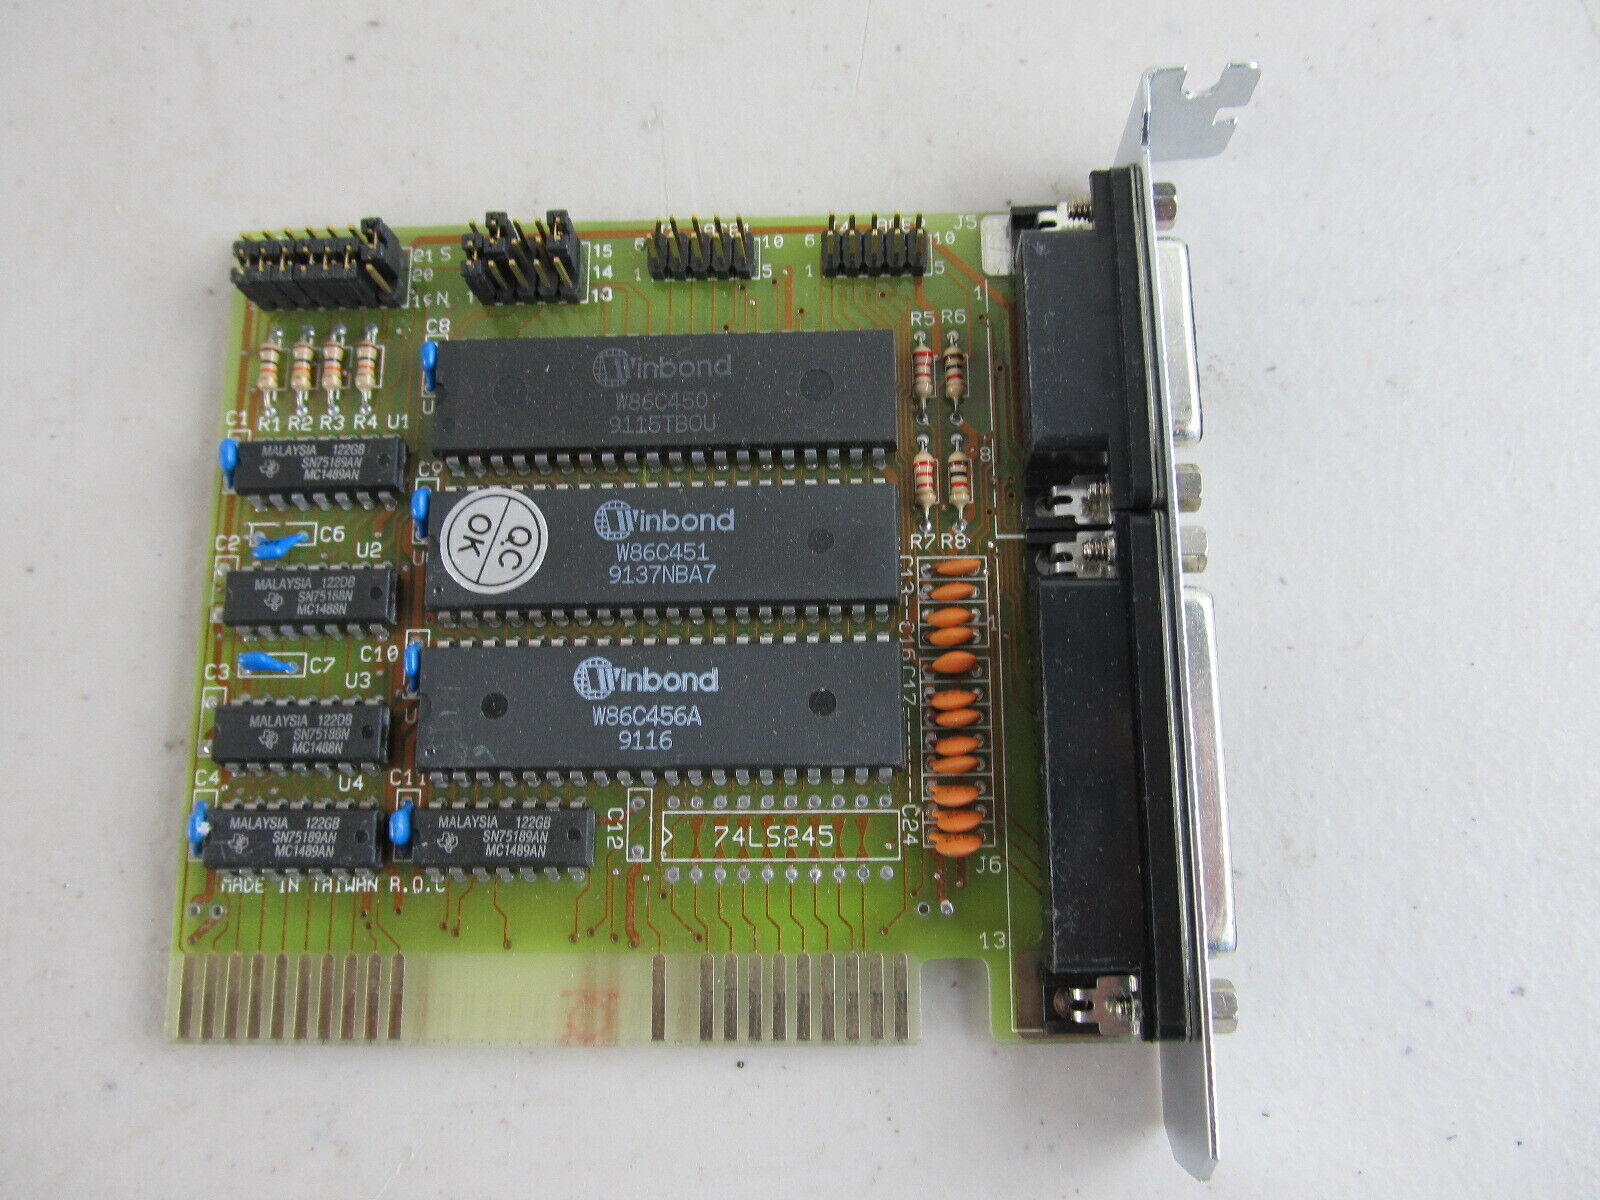  Parallel Serial IO Card Winbond W86C W86C450 W86C451 W86C456A IBM PC/2